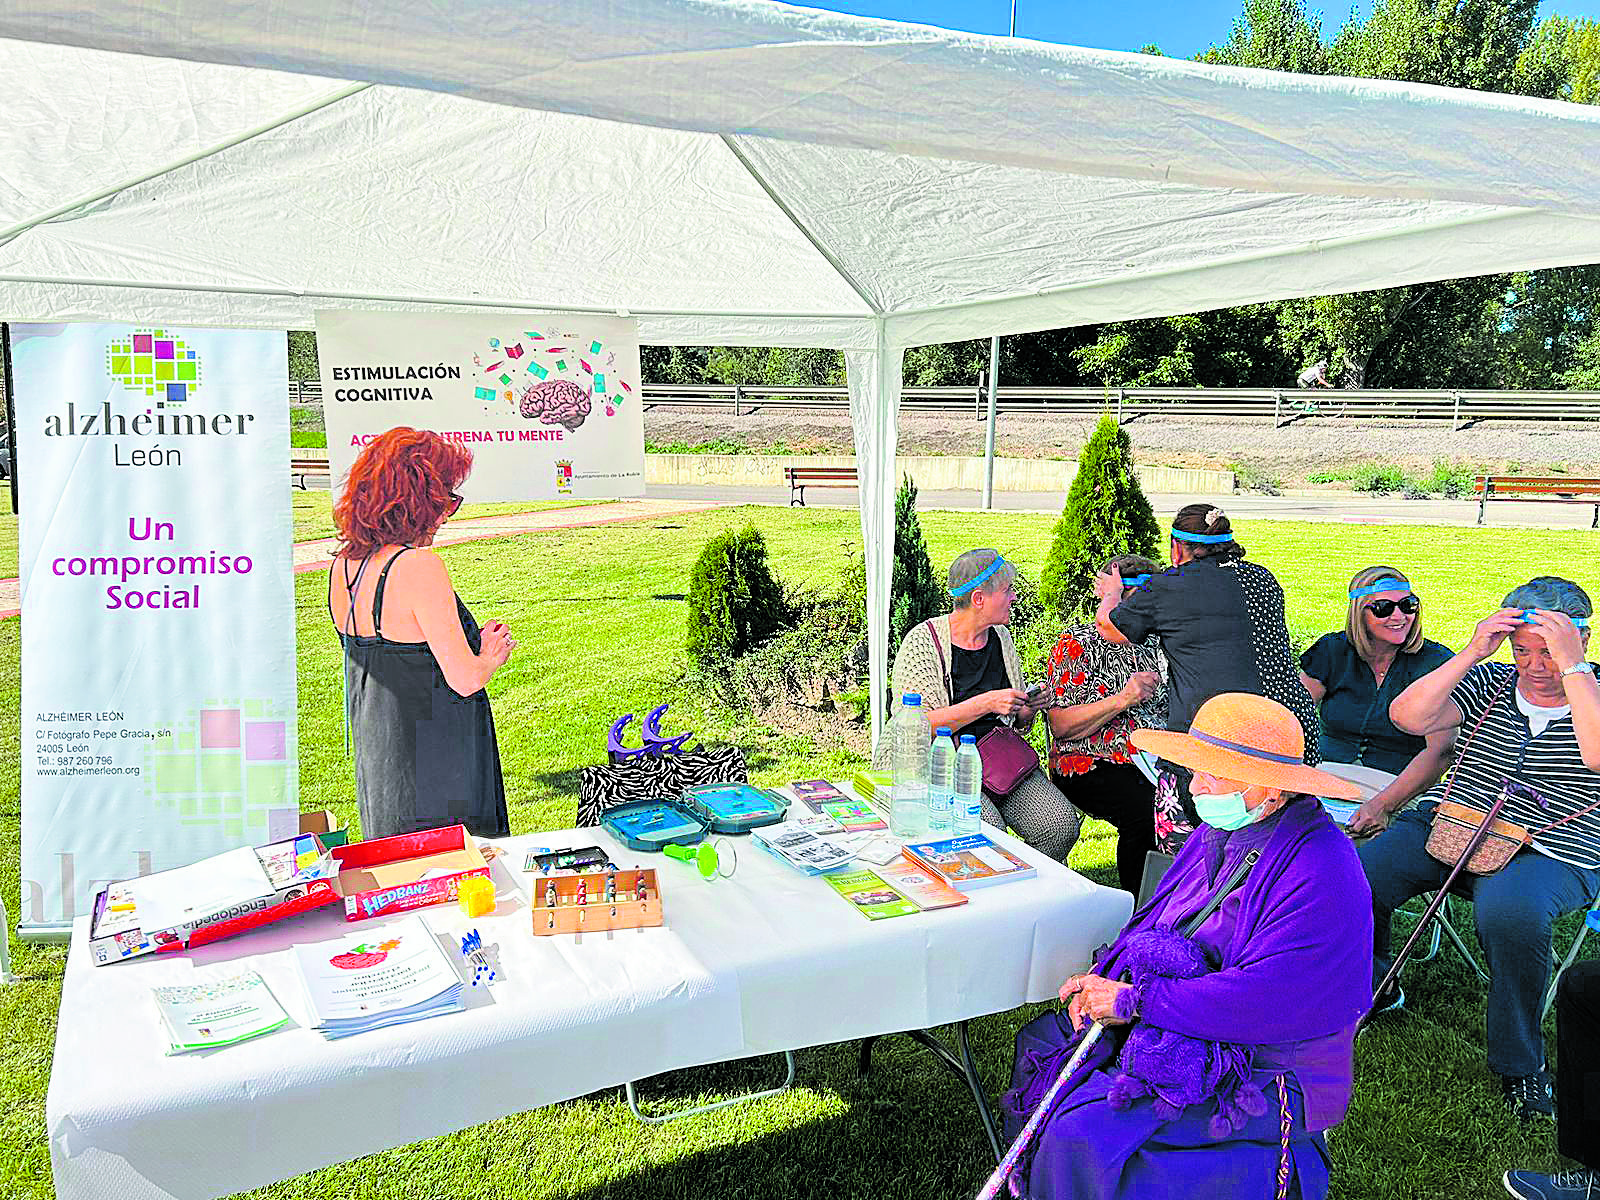 El Ayuntamiento de La Robla realiza distintas acciones de apoyo, sensibilización y prevención frente al Alzheimer. | L.N.C.